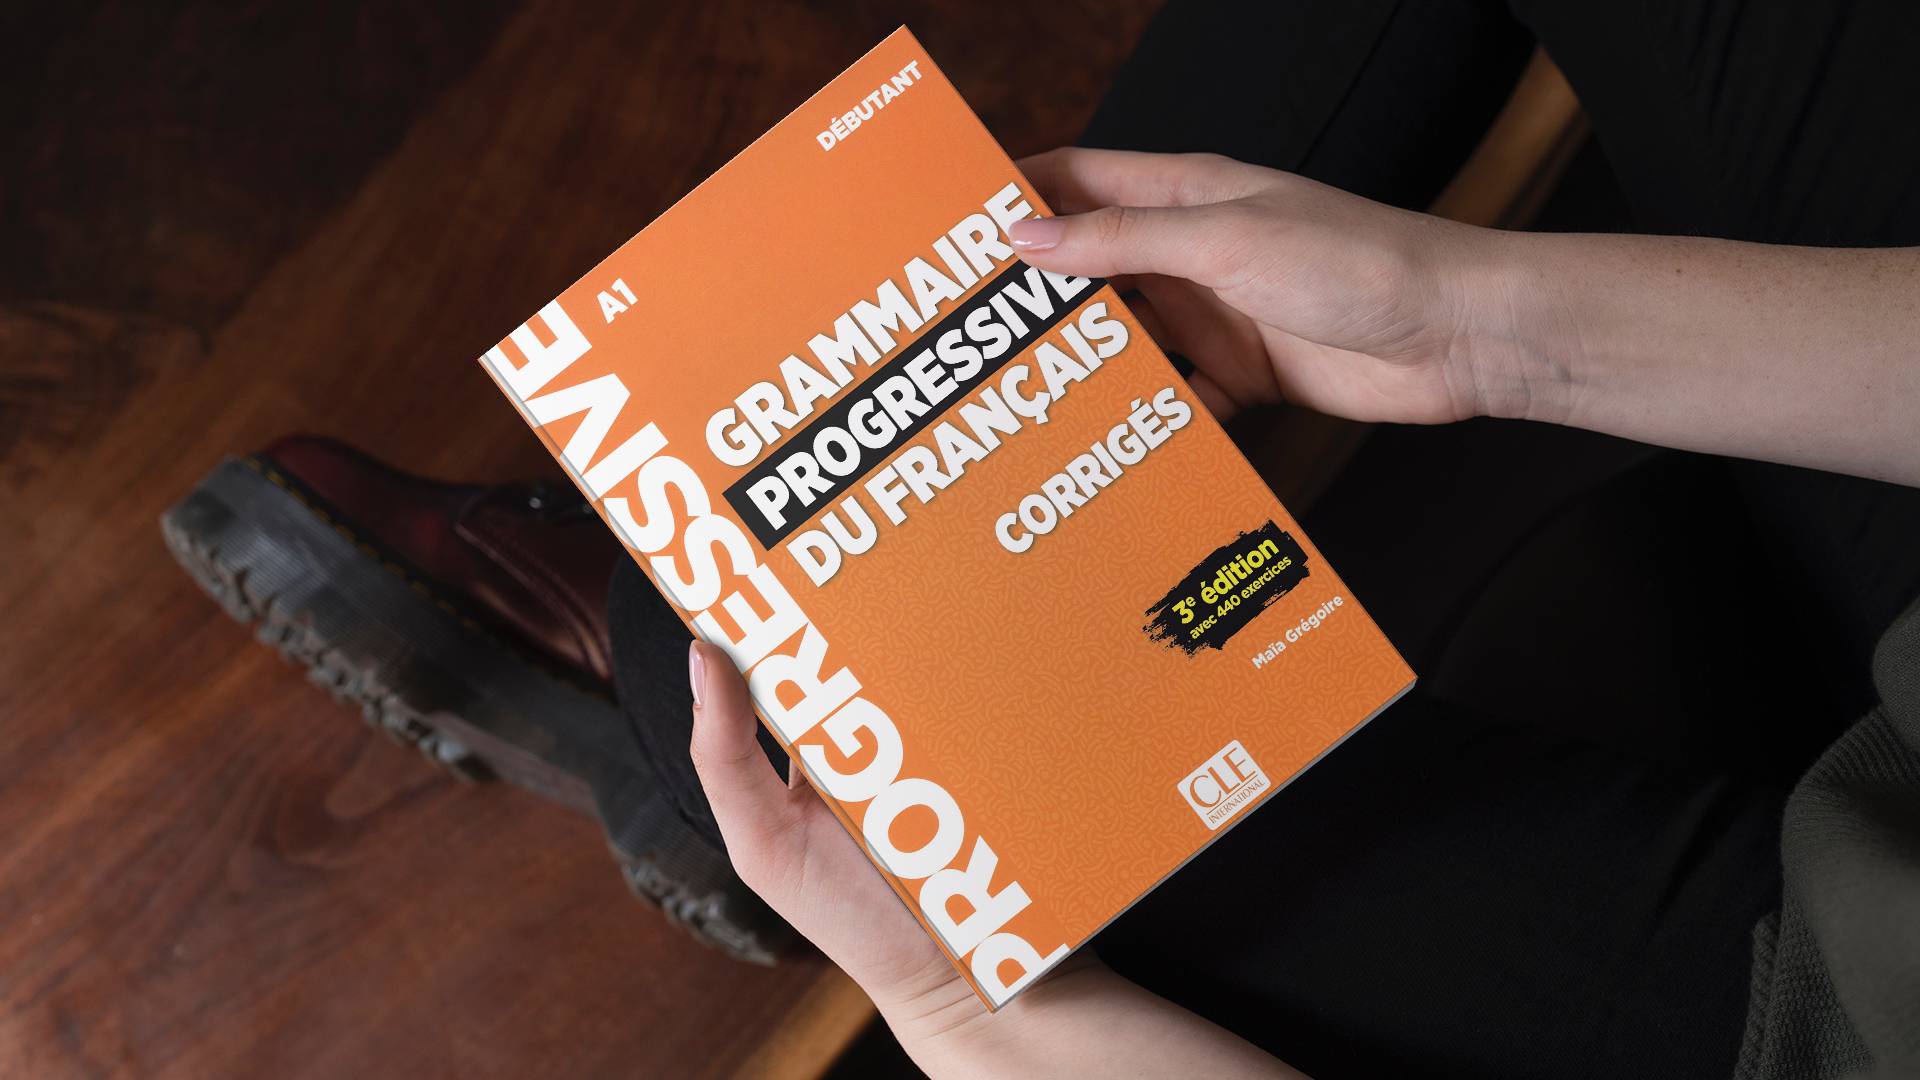 خرید کتاب زبان | فروشگاه اینترنتی کتاب زبان | Grammaire Progressive Du Francais A1 Debutant 3e Edition | گرامر پروگرسیو فرانسه دبیوتانت ویرایش سوم